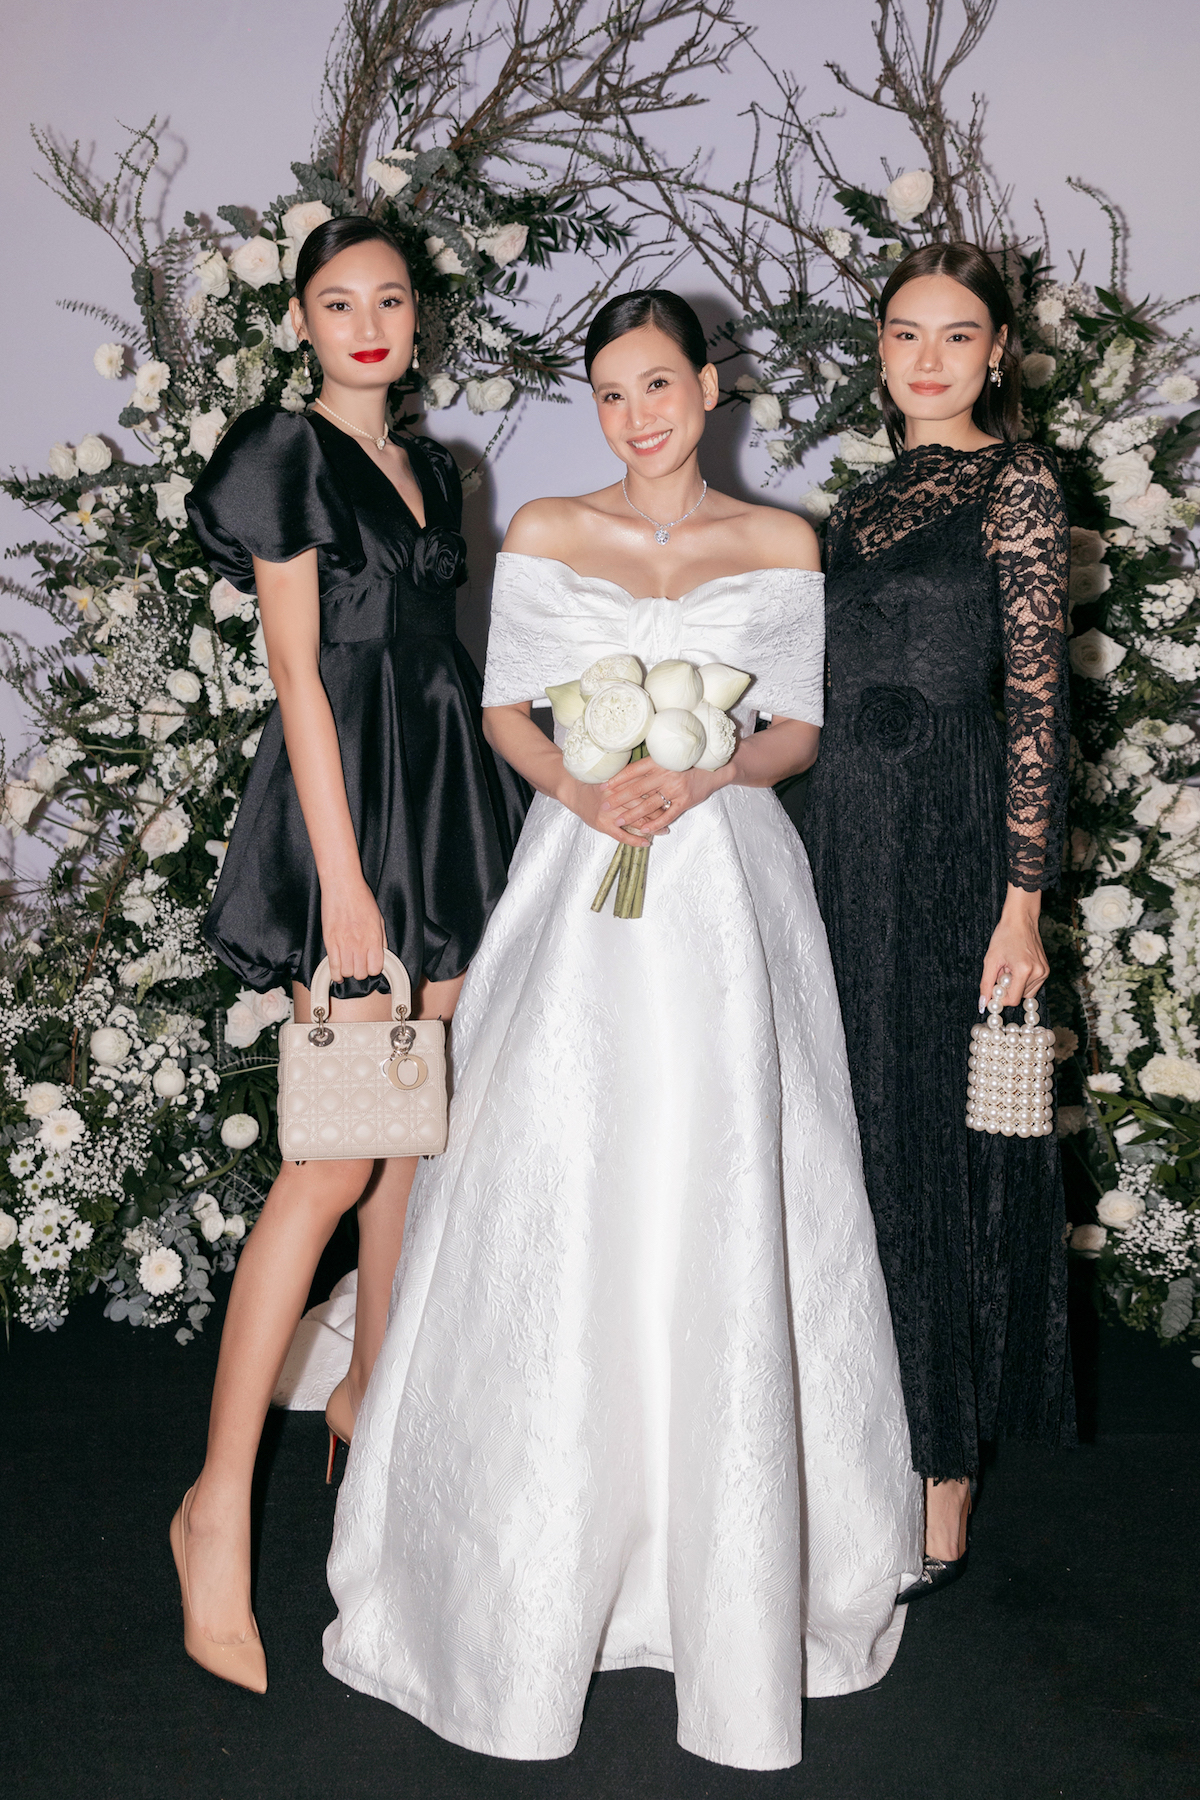 Dàn sao vui mừng dự tiệc cưới của Hoa hậu Dương Mỹ Linh - 11